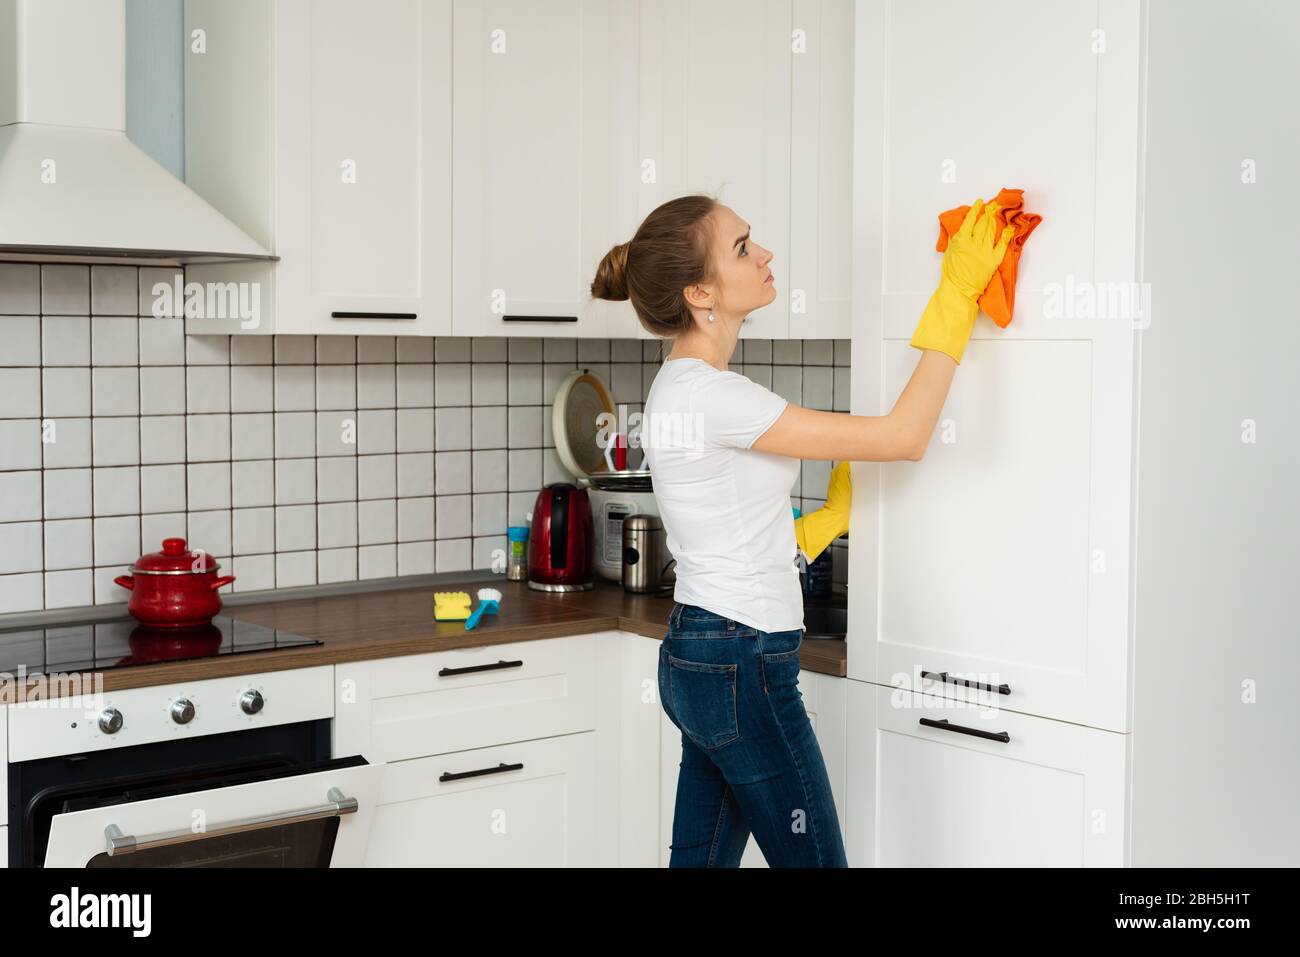 Das Konzept der Frühjahrsputz, Reinigungsfirma. Junge Frau Reinigung einer Oberfläche von weißen Küchenwand Schrank, tragen Gummi-Schutzhandschuhe gelb, mit Lappen. Haus, Hauswirtschaftskonzept. Stockfoto